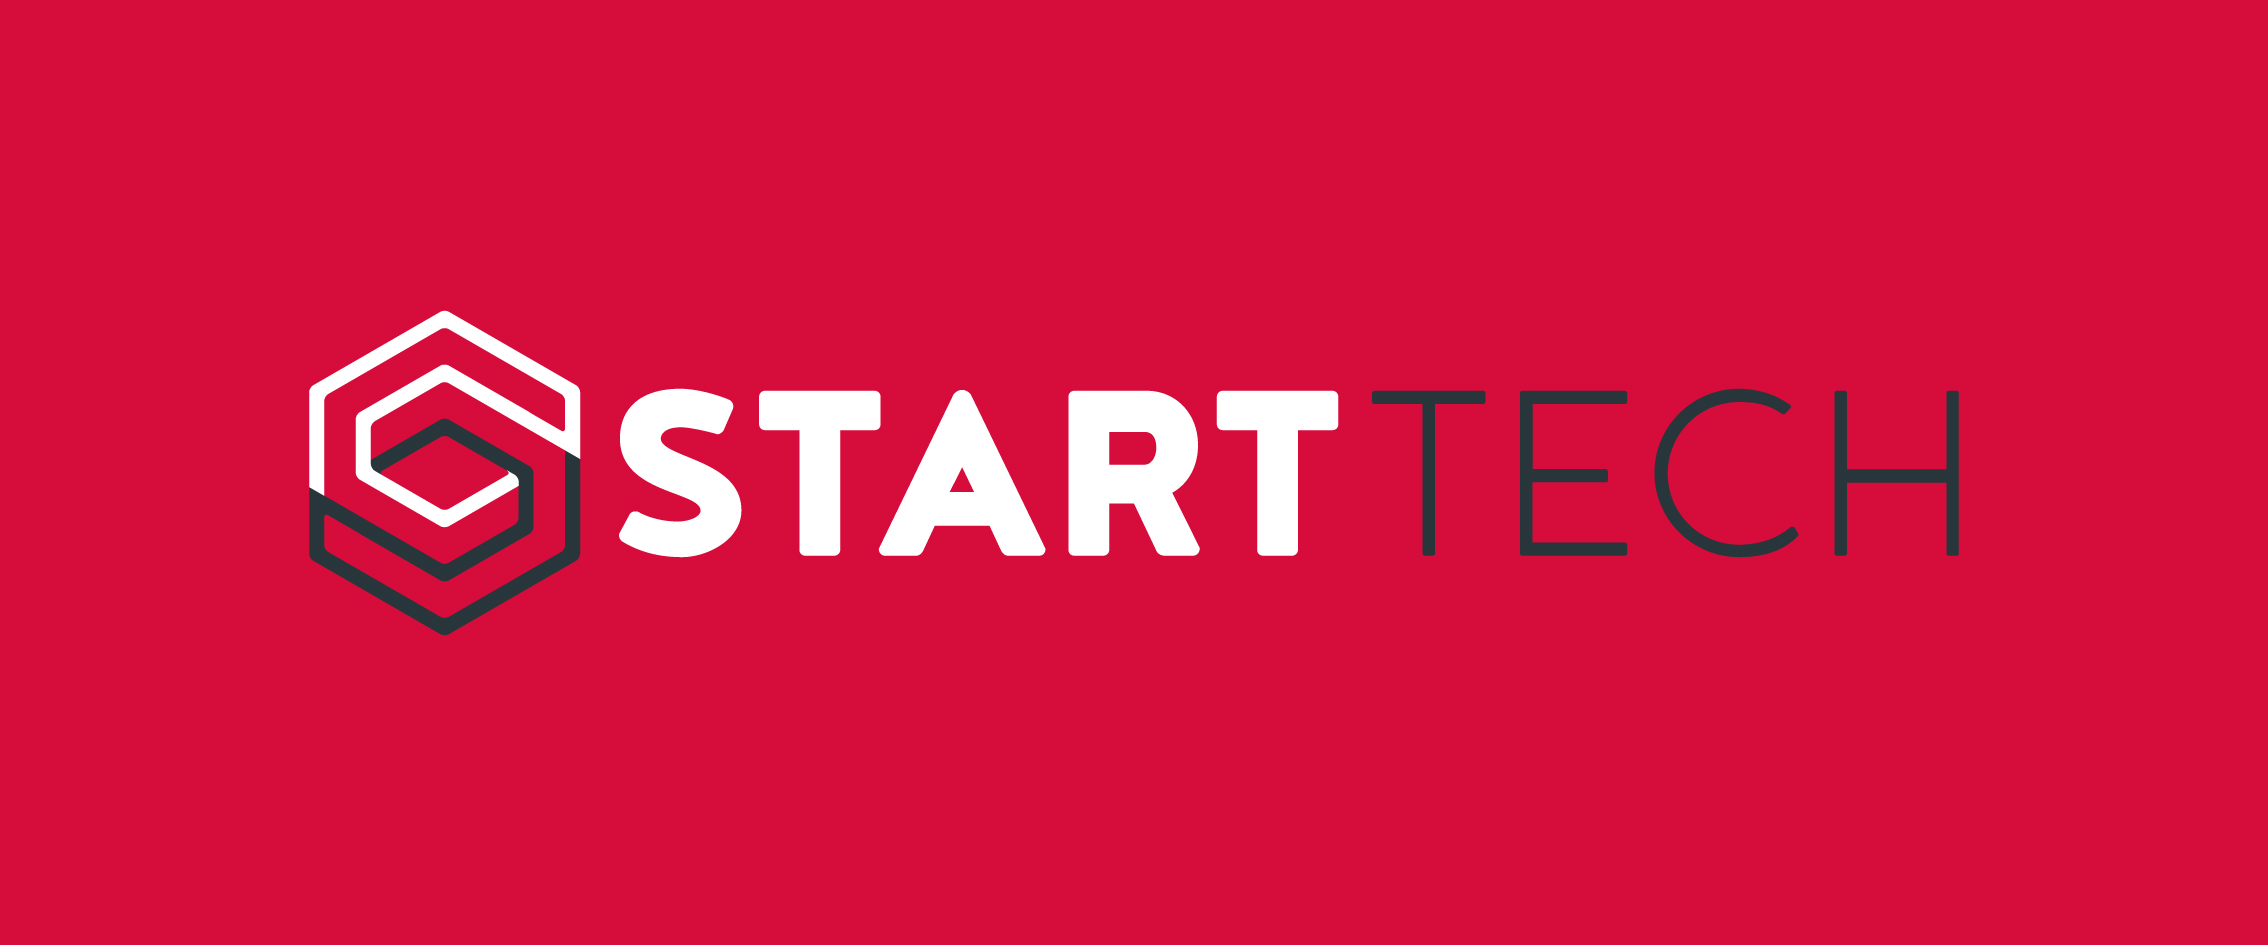 Start Tech logo